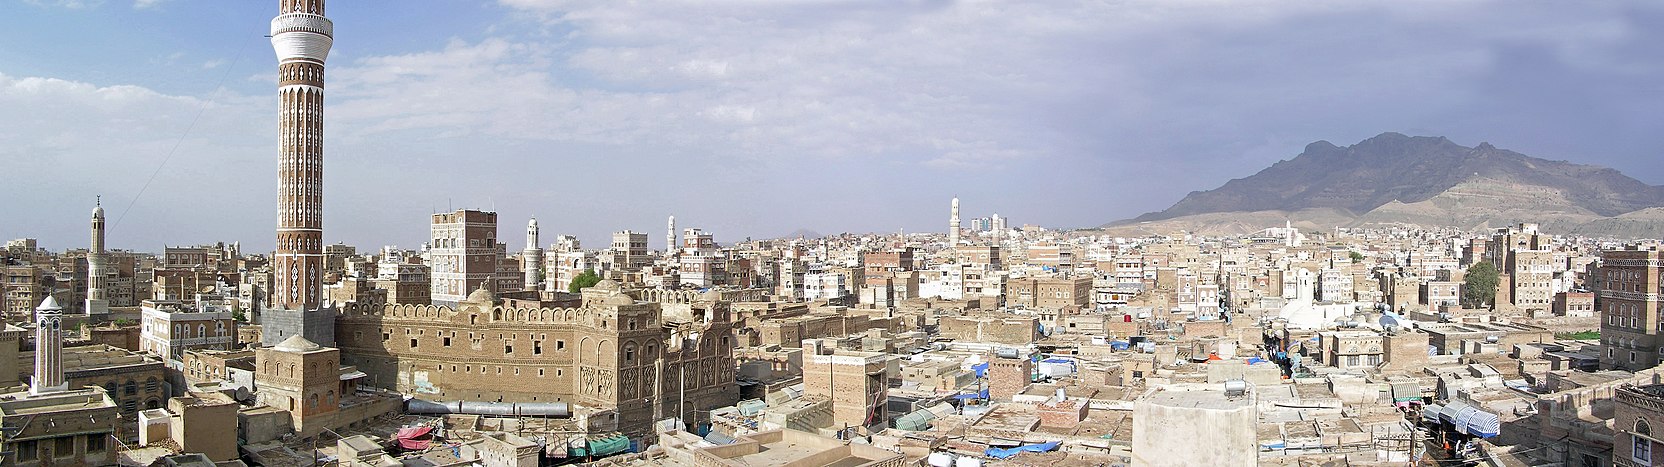 Вікіпедія:Проєкт:Ємен